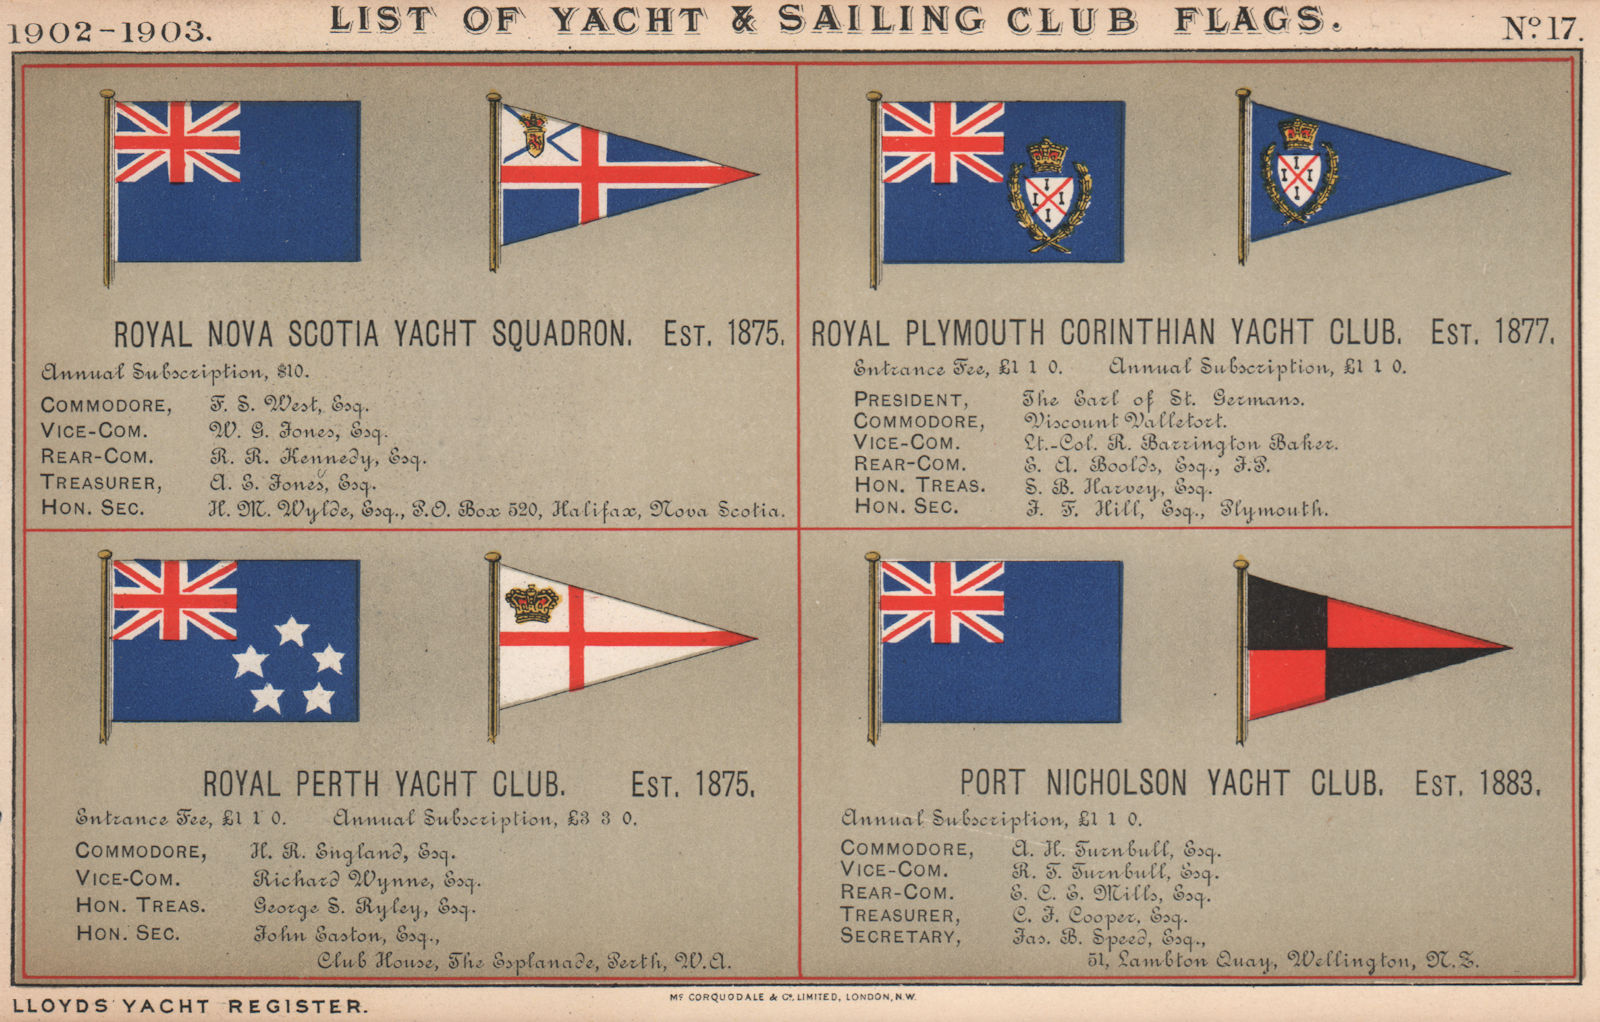 ROYAL YACHT/SAILING CLUB FLAGS Nova Scotia. Plymouth. Perth. Port Nicholson 1902